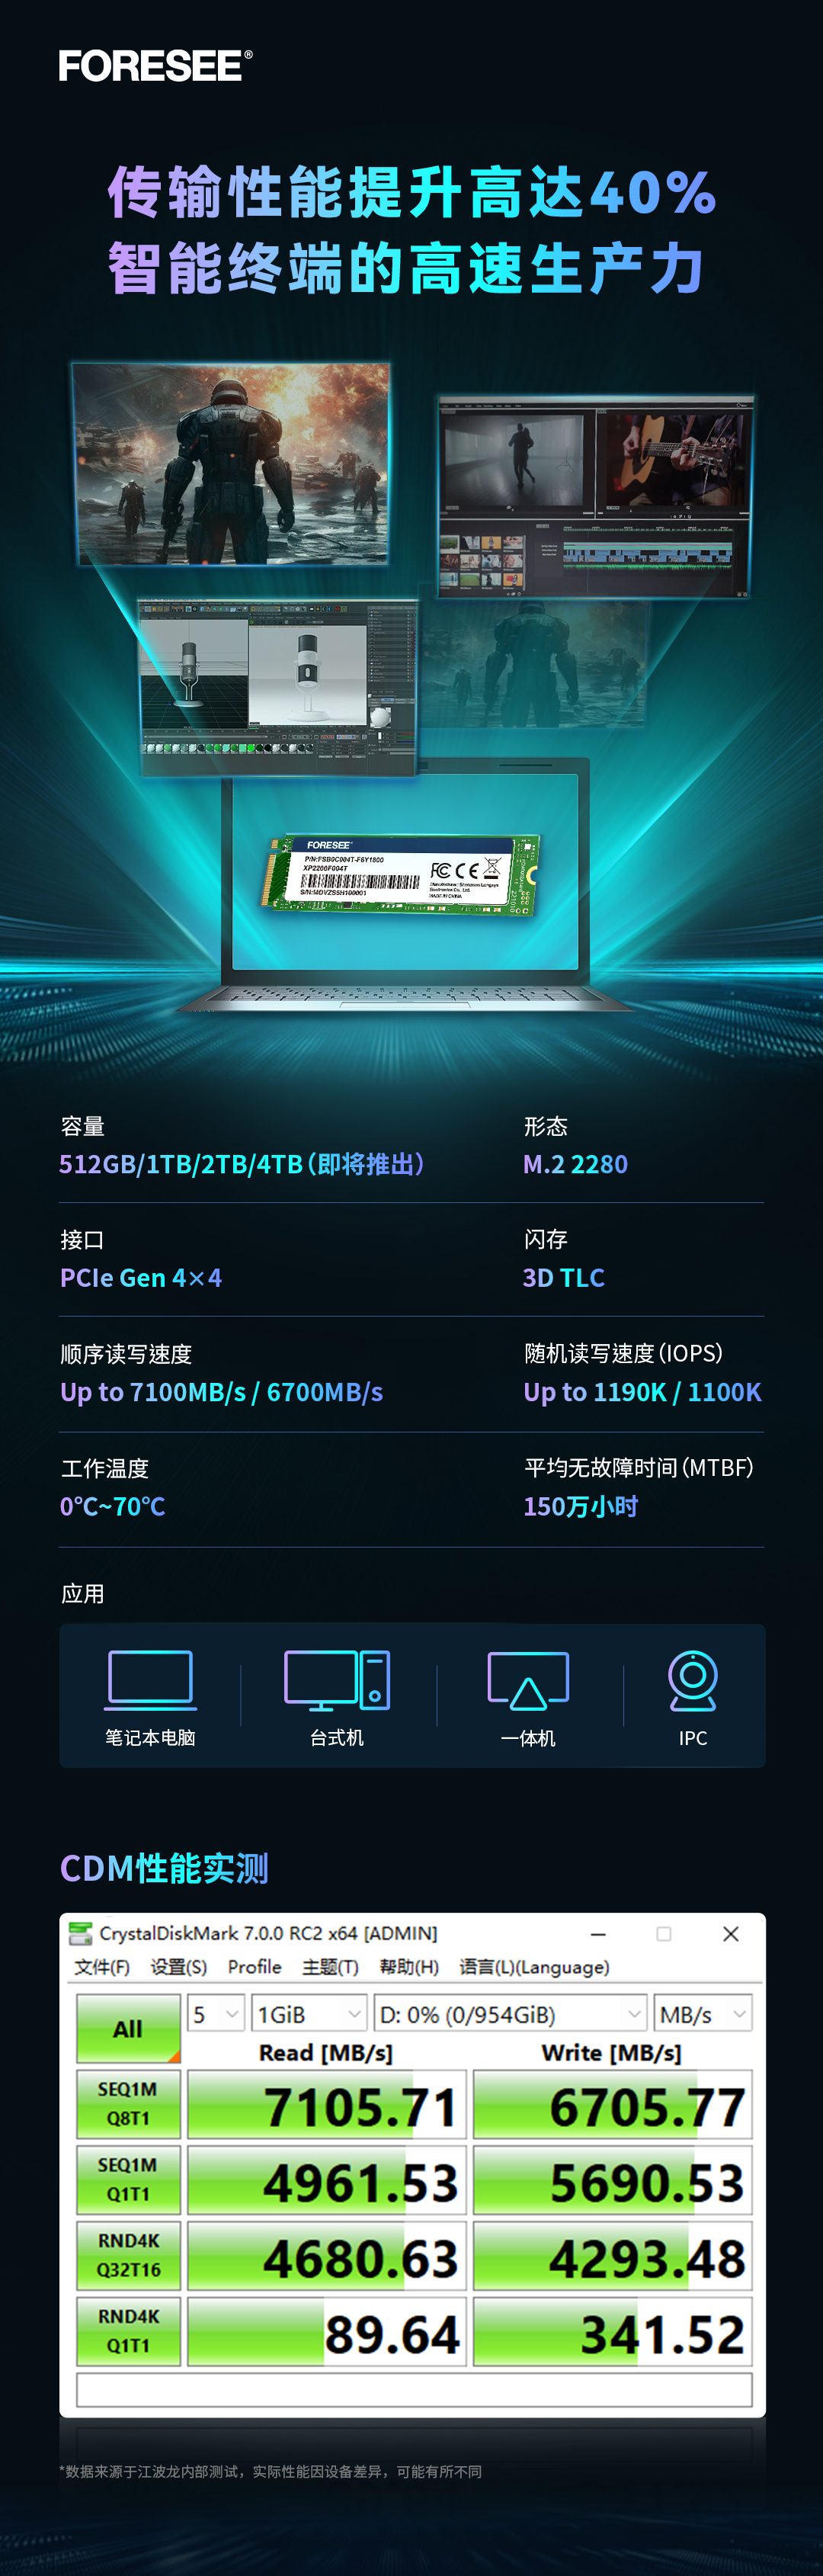 读写性能提高40%！江波龙FORESEE XP2200系列SSD推出M.2 2280规格